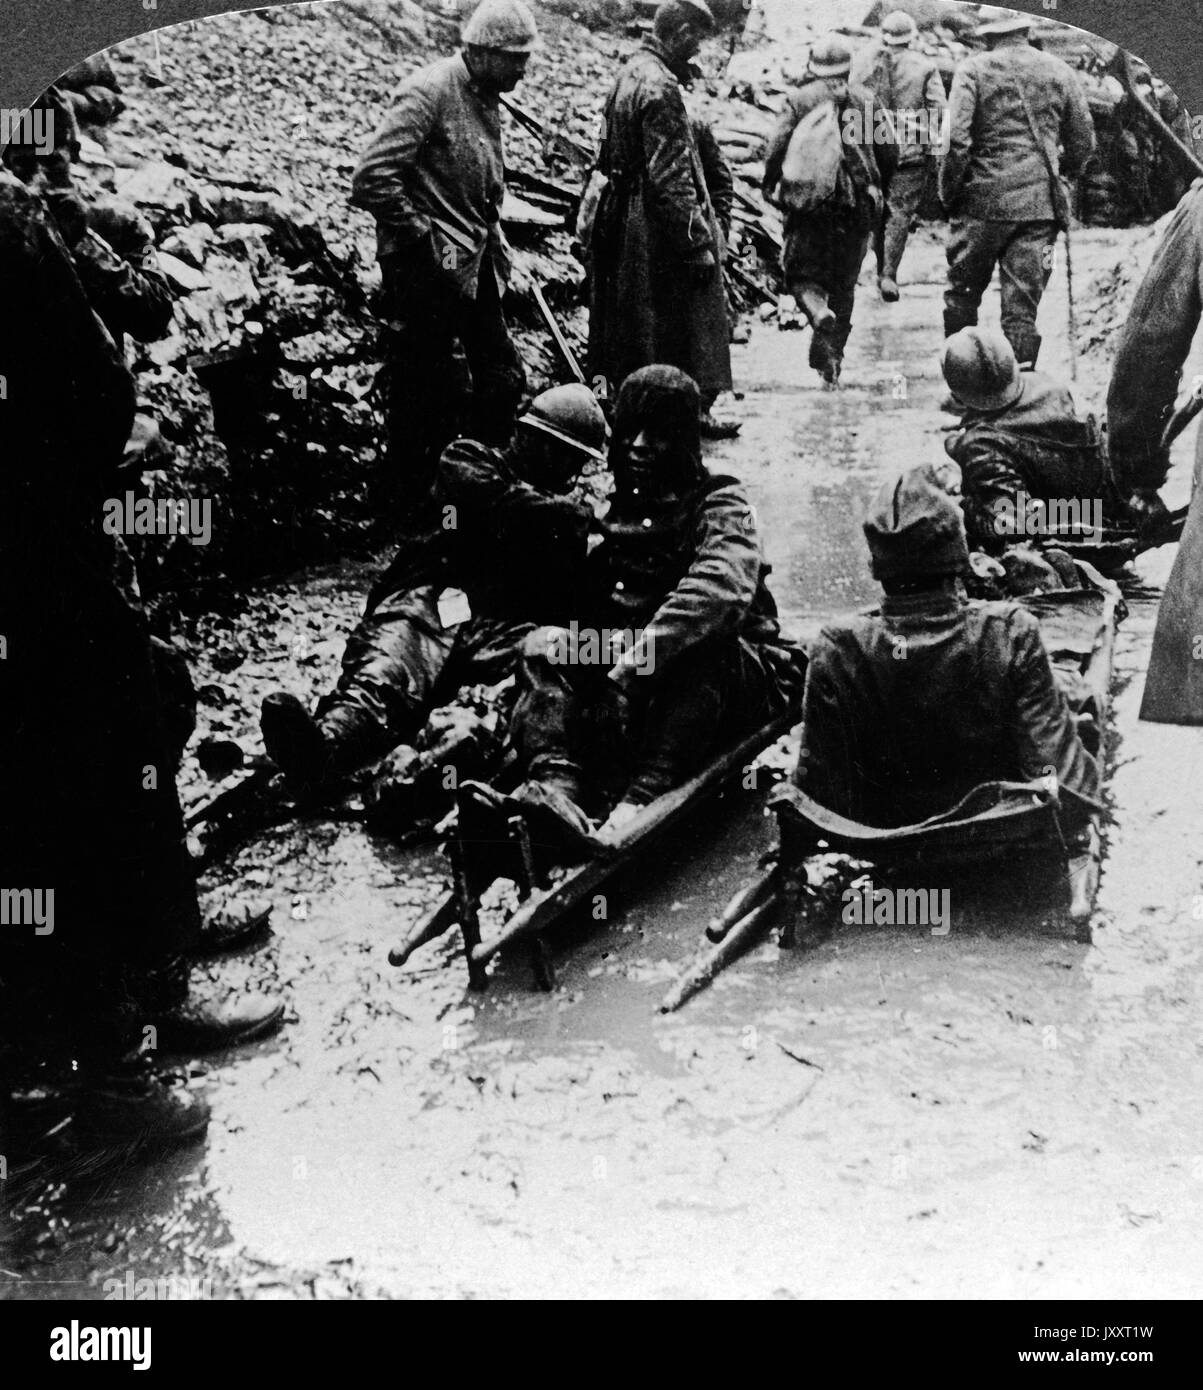 Die Verwundeten werden reingebracht, voller Blut auf Tragen, Frankreich 1918. Bringing in the wounded, 'on stretchers stiff and bleared with blood', France 1918. Stock Photo